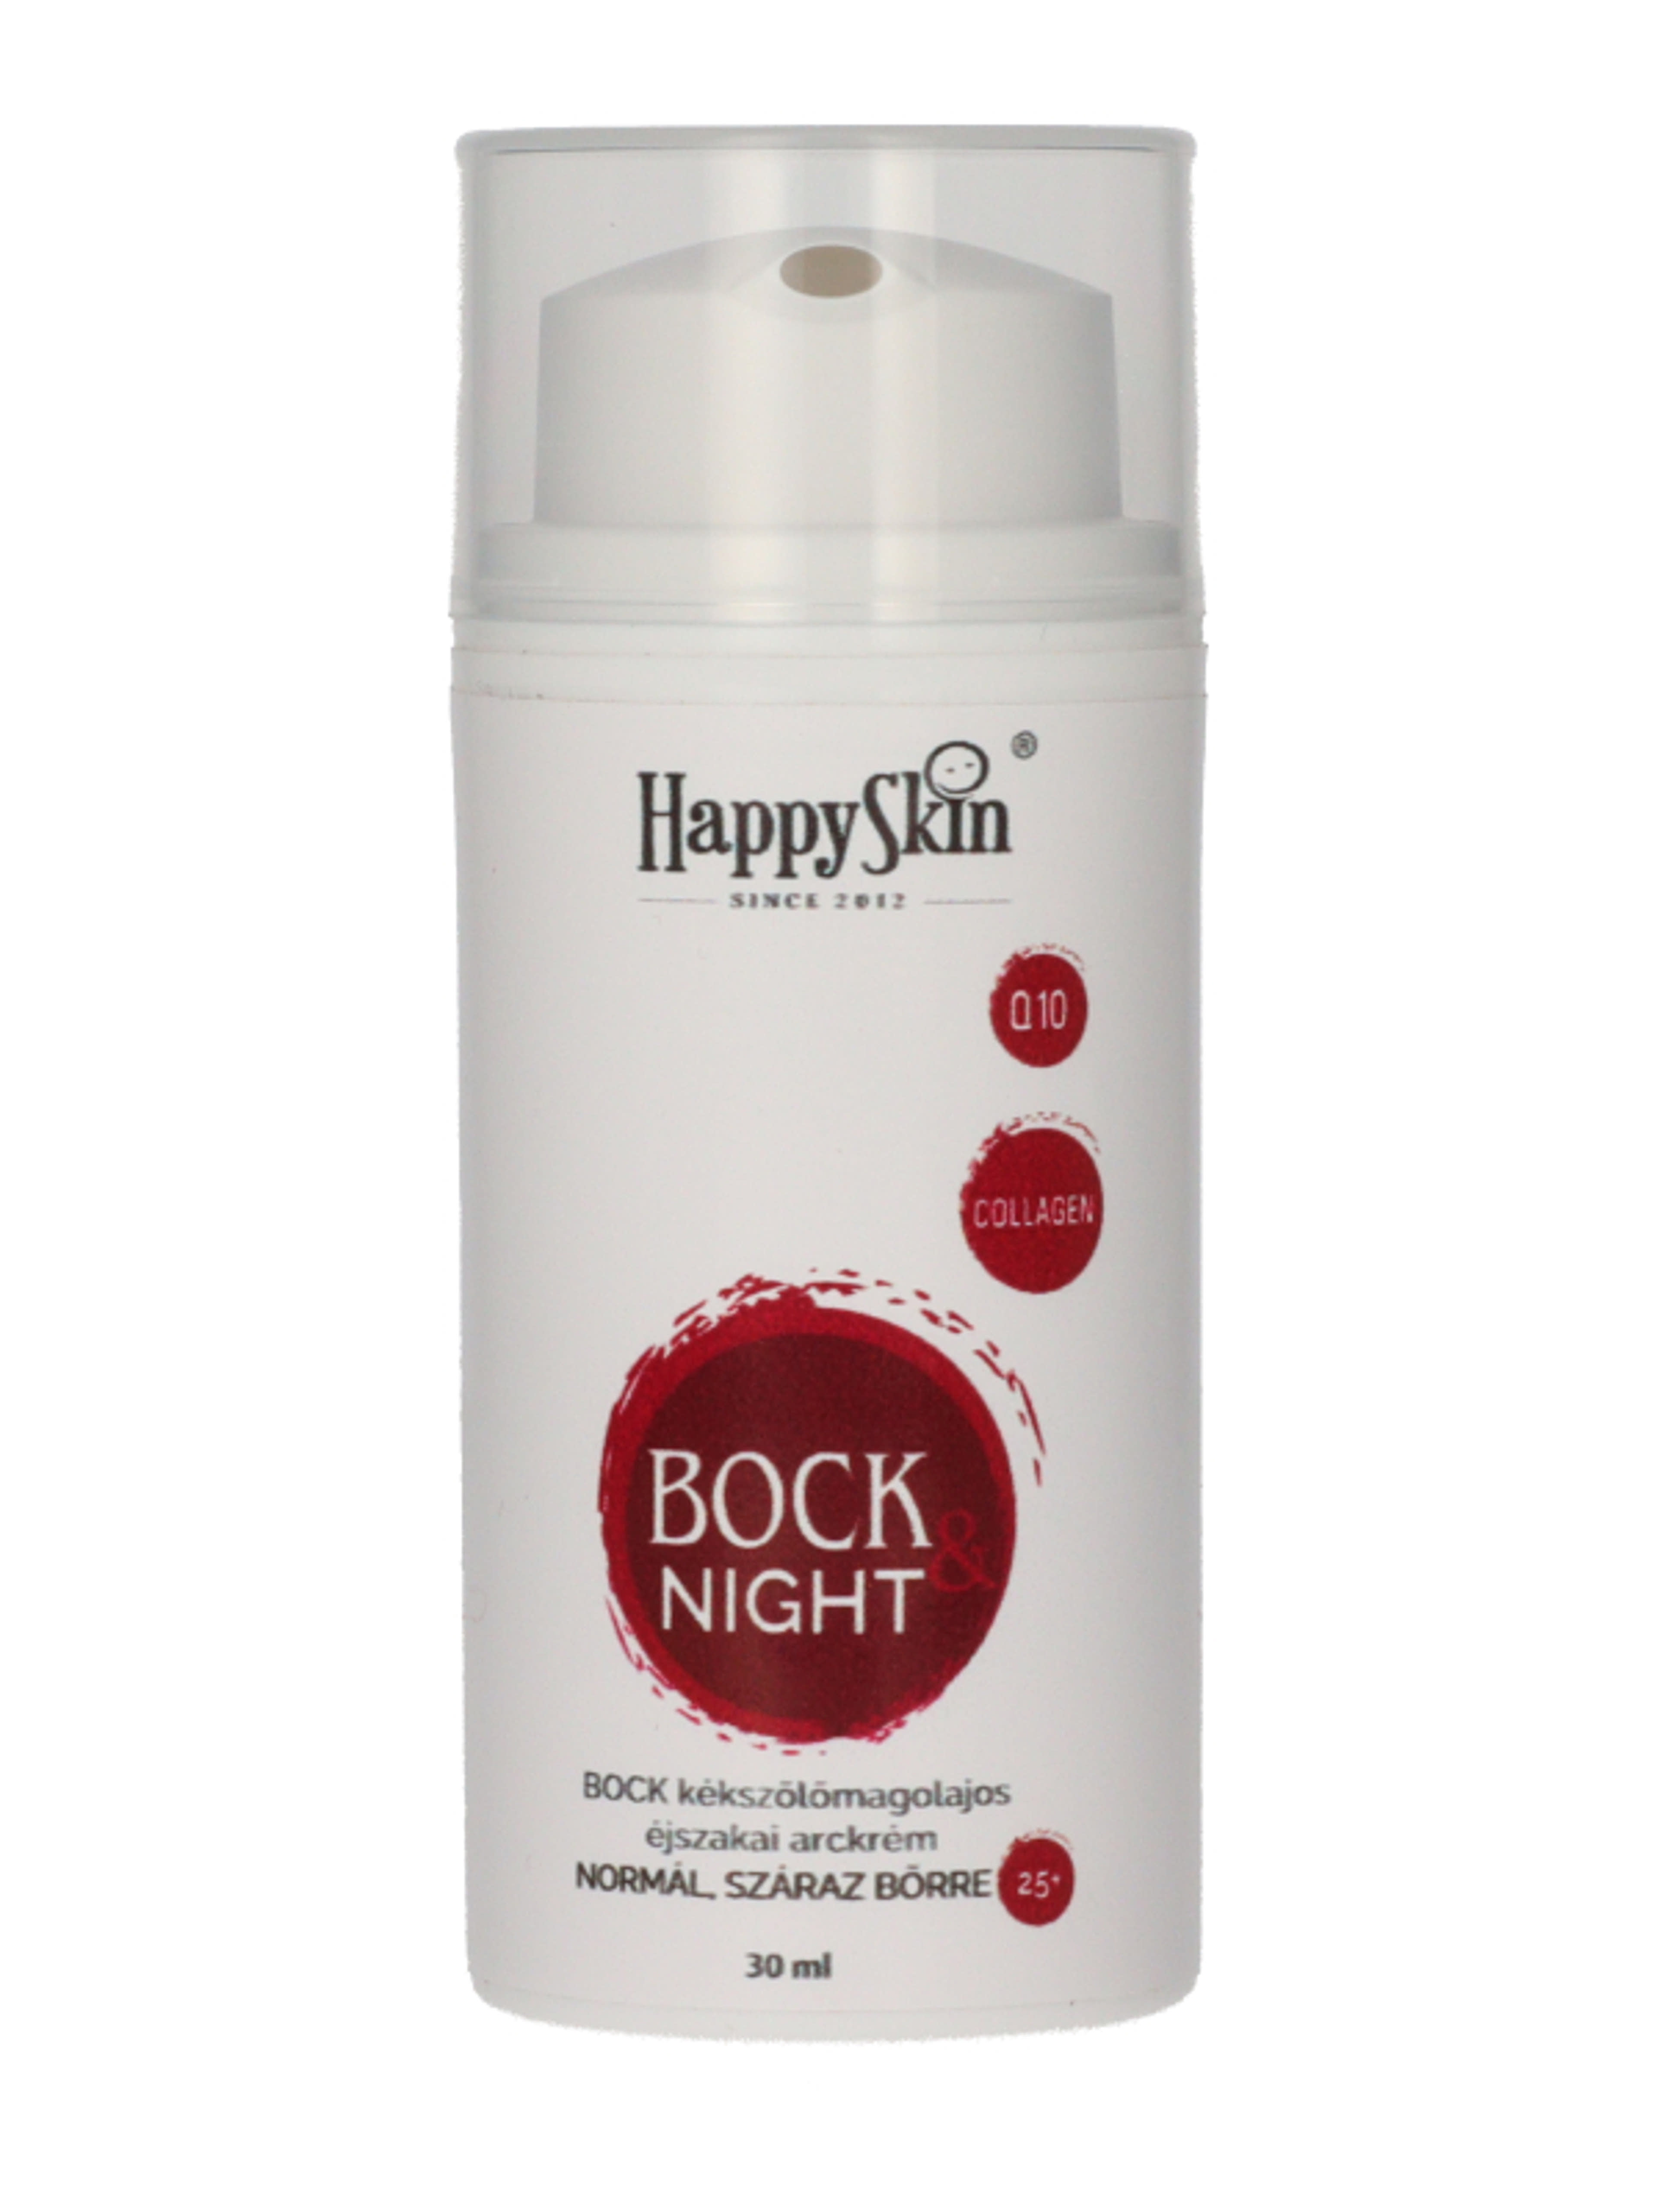 HappySkin Bock éjszakai arckrém kékszölőmagolajos - 30 ml-1